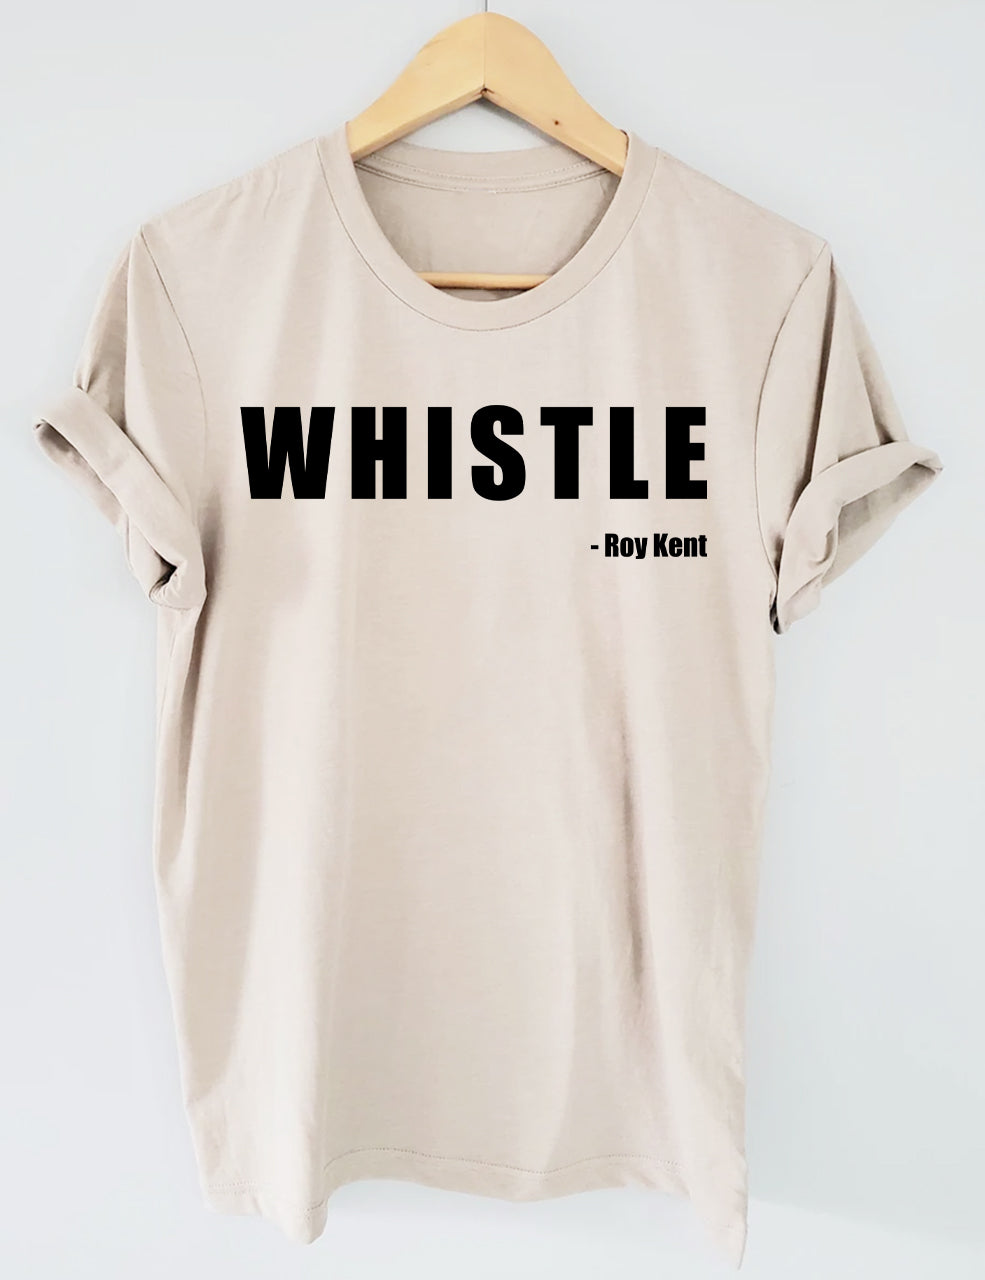 Whistle! Roy Kent Soccer T-Shirt